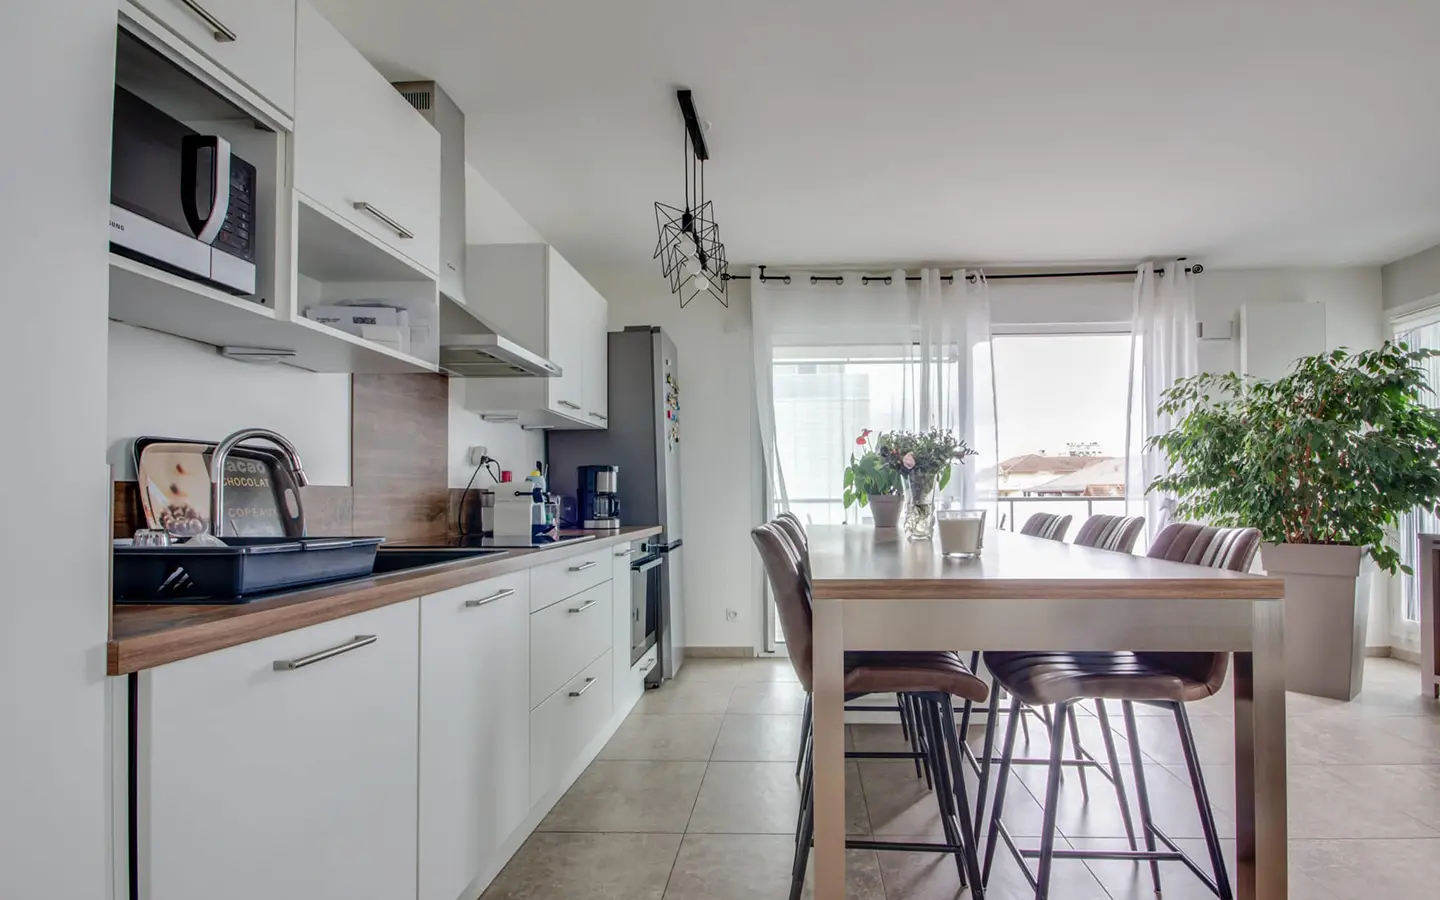 Achat immobilier appartement t3 avec terrasse rénovée Annecy-le-vieux cuisine ouverte